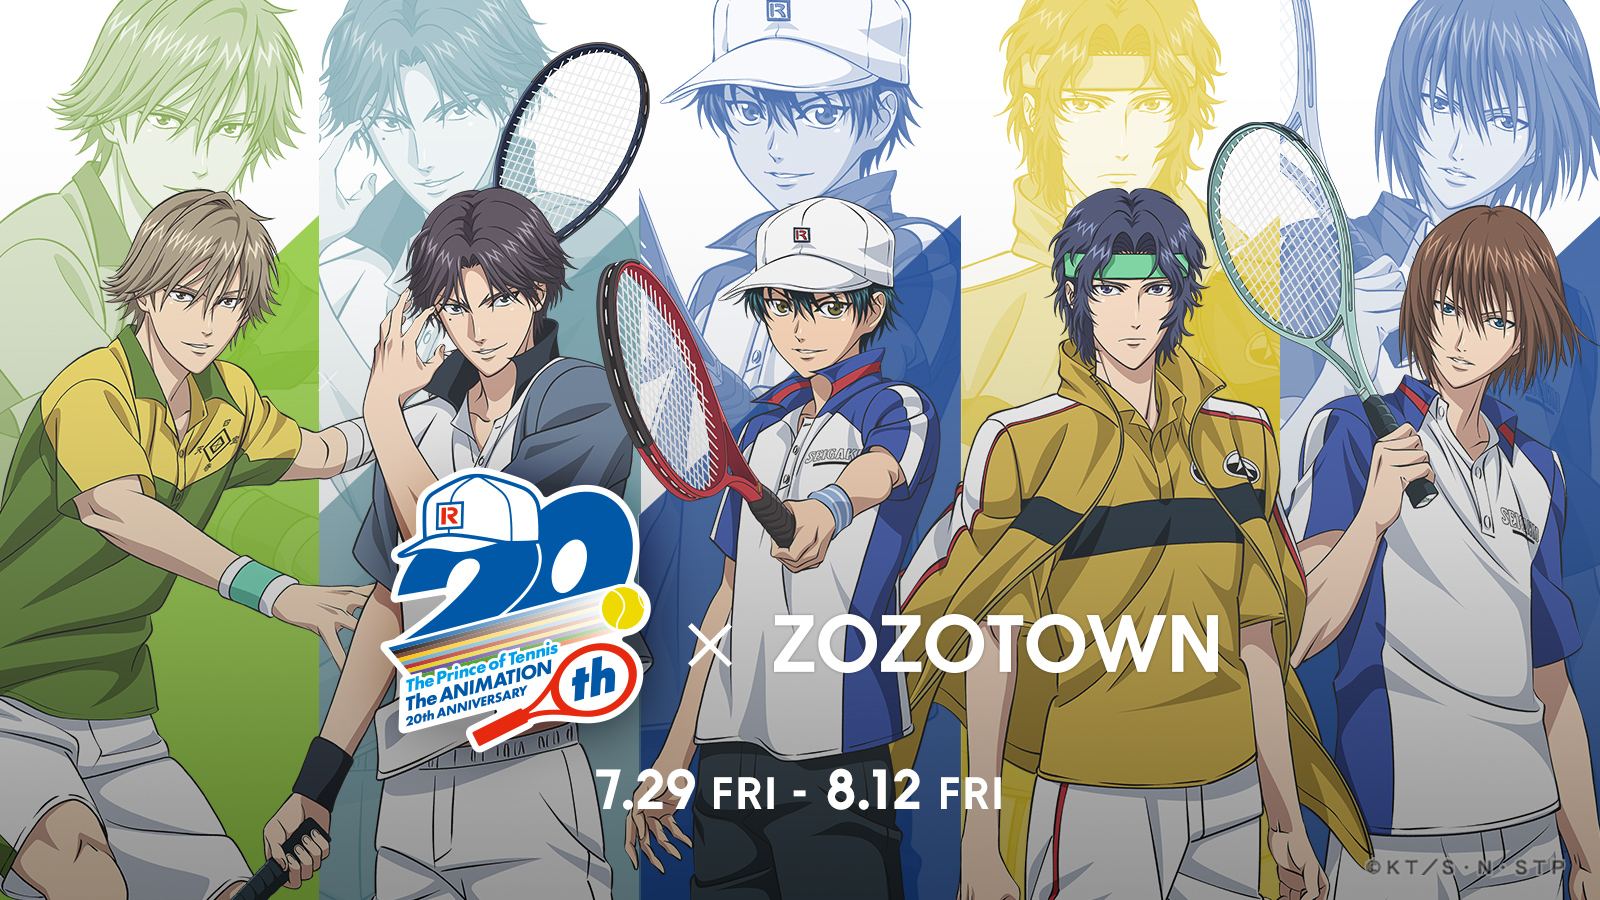 アニメ 新テニスの王子様 とzozotownがコラボ ゆるいタッチの描き下ろしイラストを使用した限定アイテムを7月29日より販売 株式会社zozoのプレスリリース